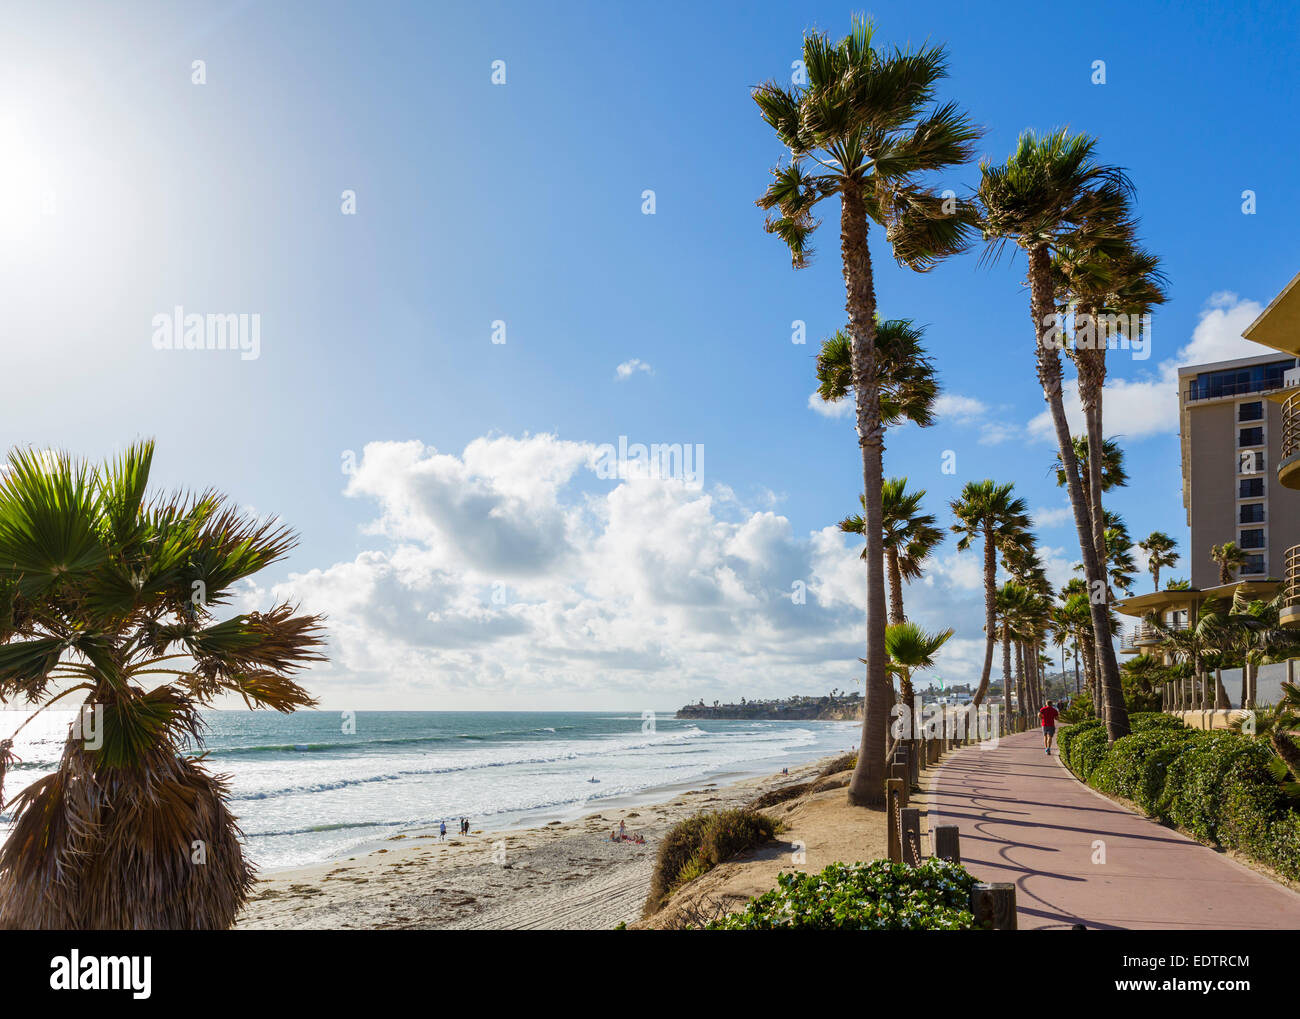 La Mission Beach dal Fronte Oceano a piedi, San Diego, California, Stati Uniti d'America Foto Stock